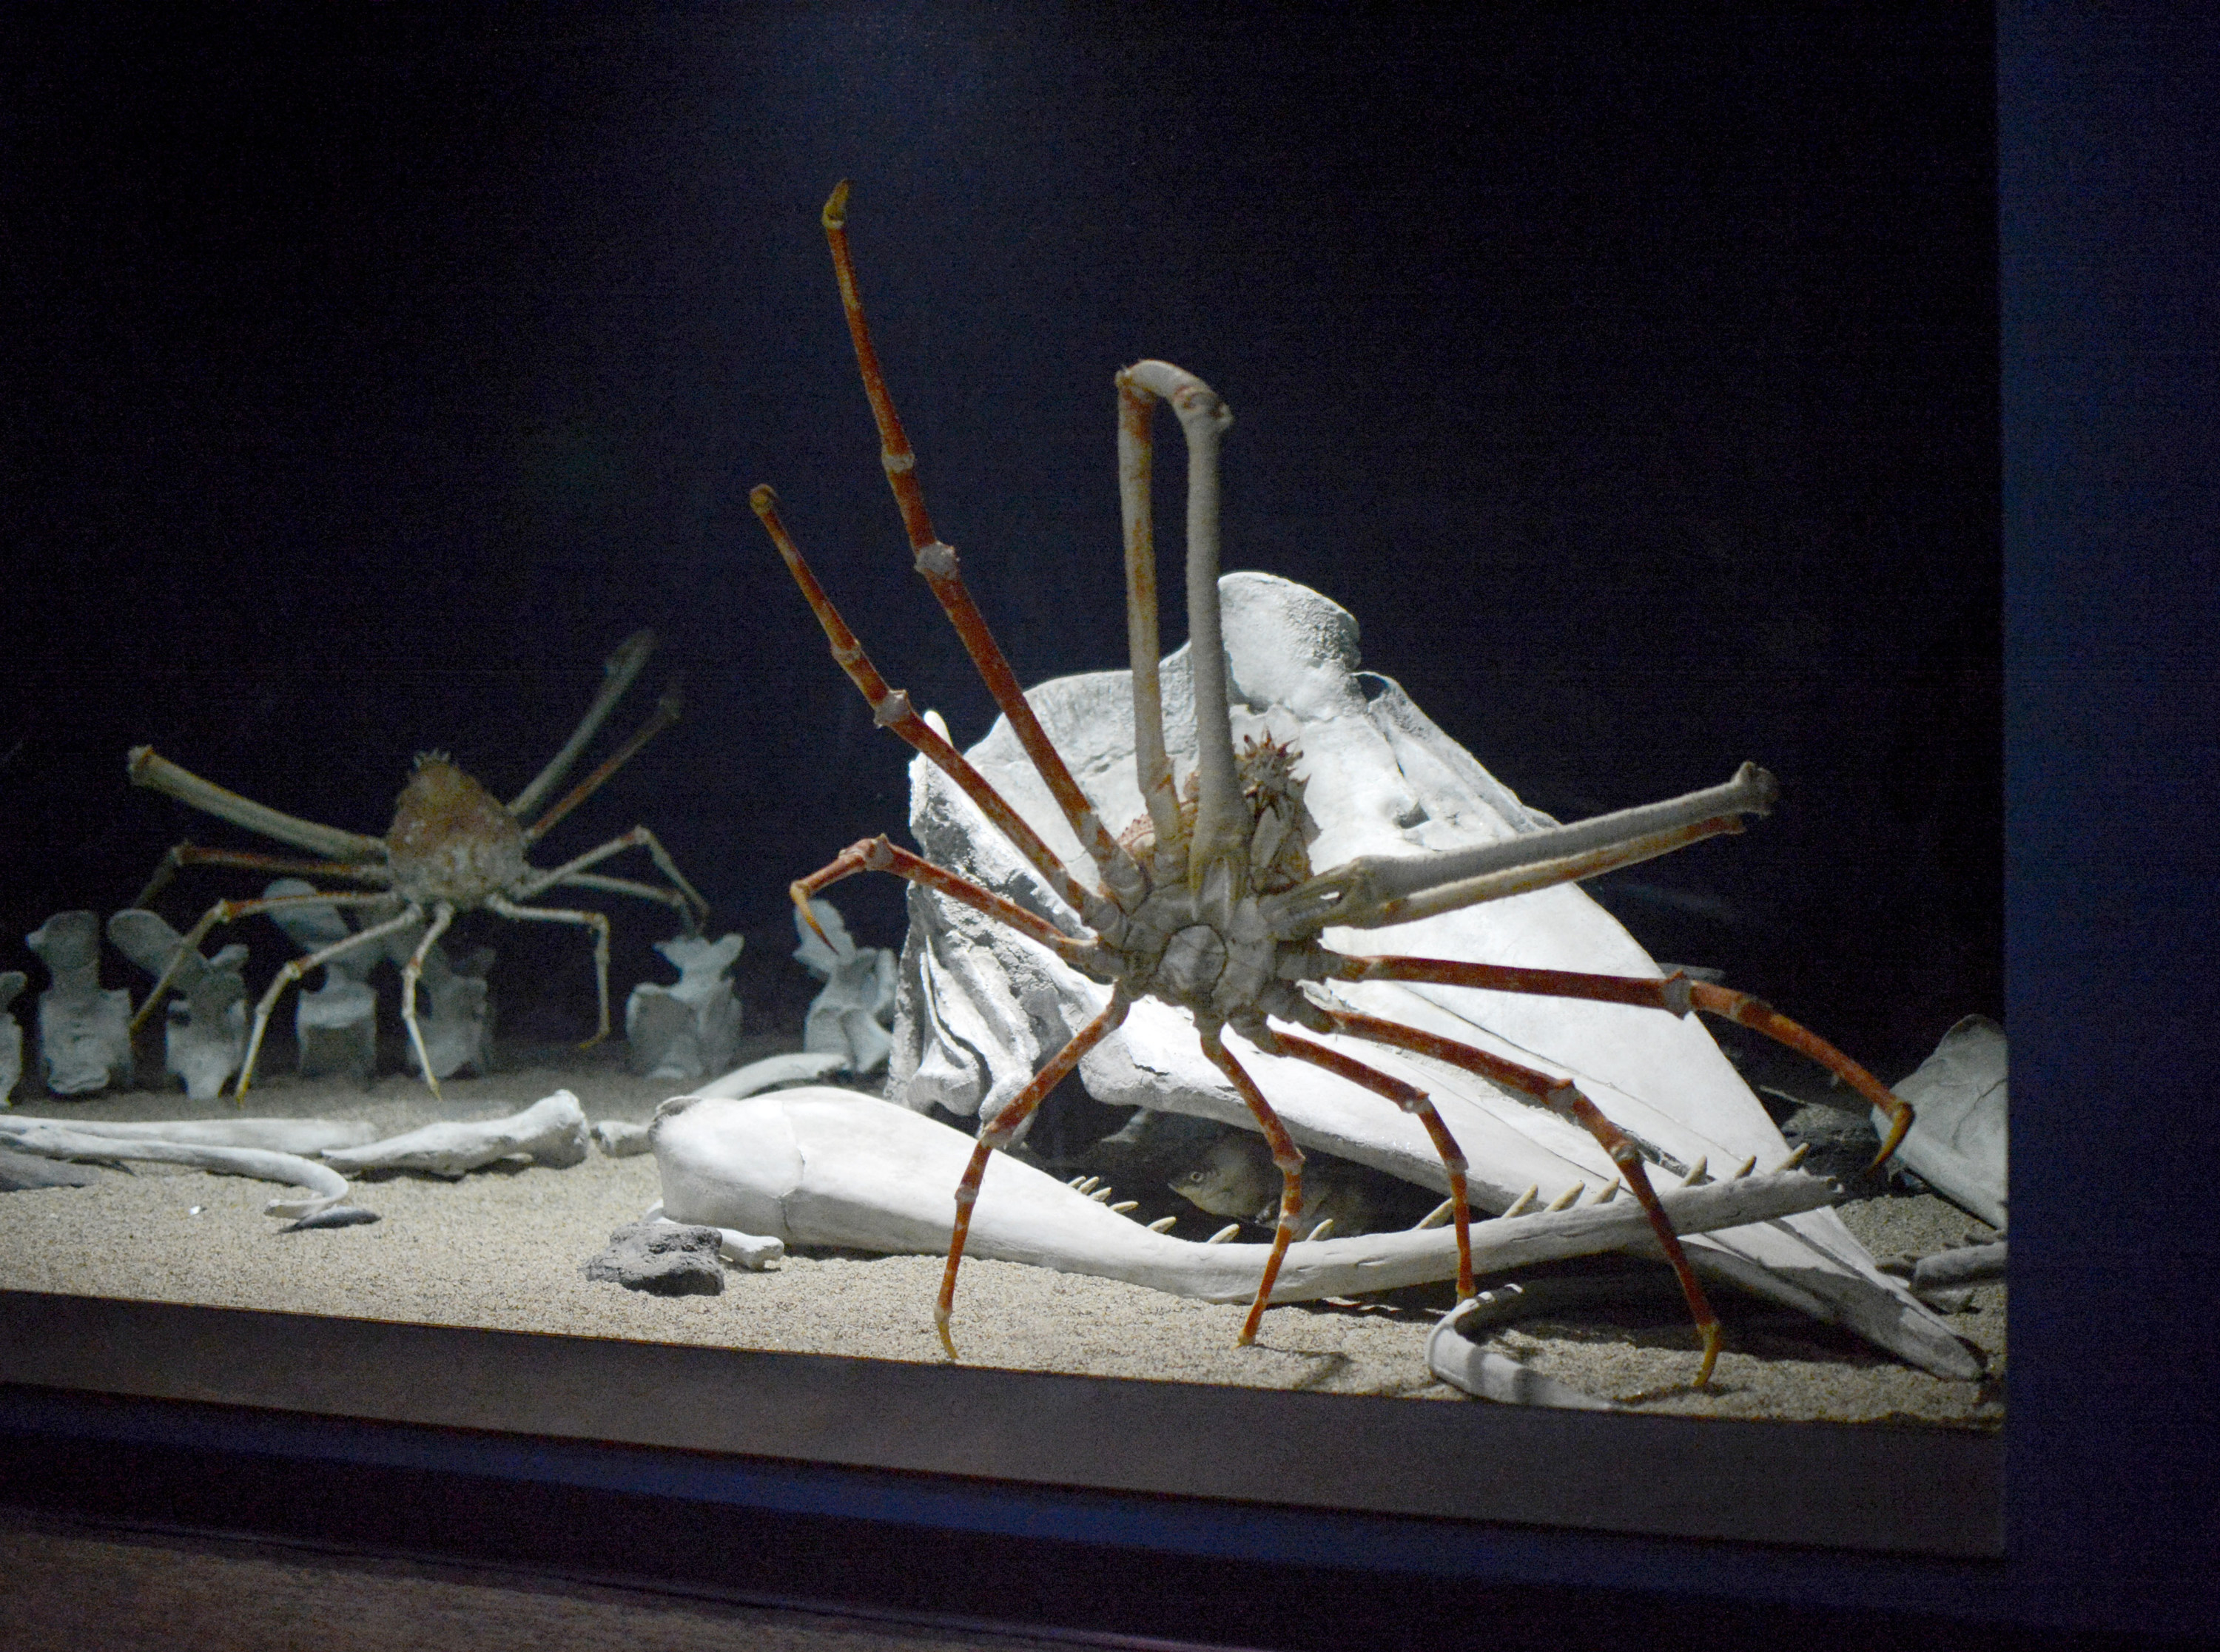 Japanese spider crab in an aquarium tank